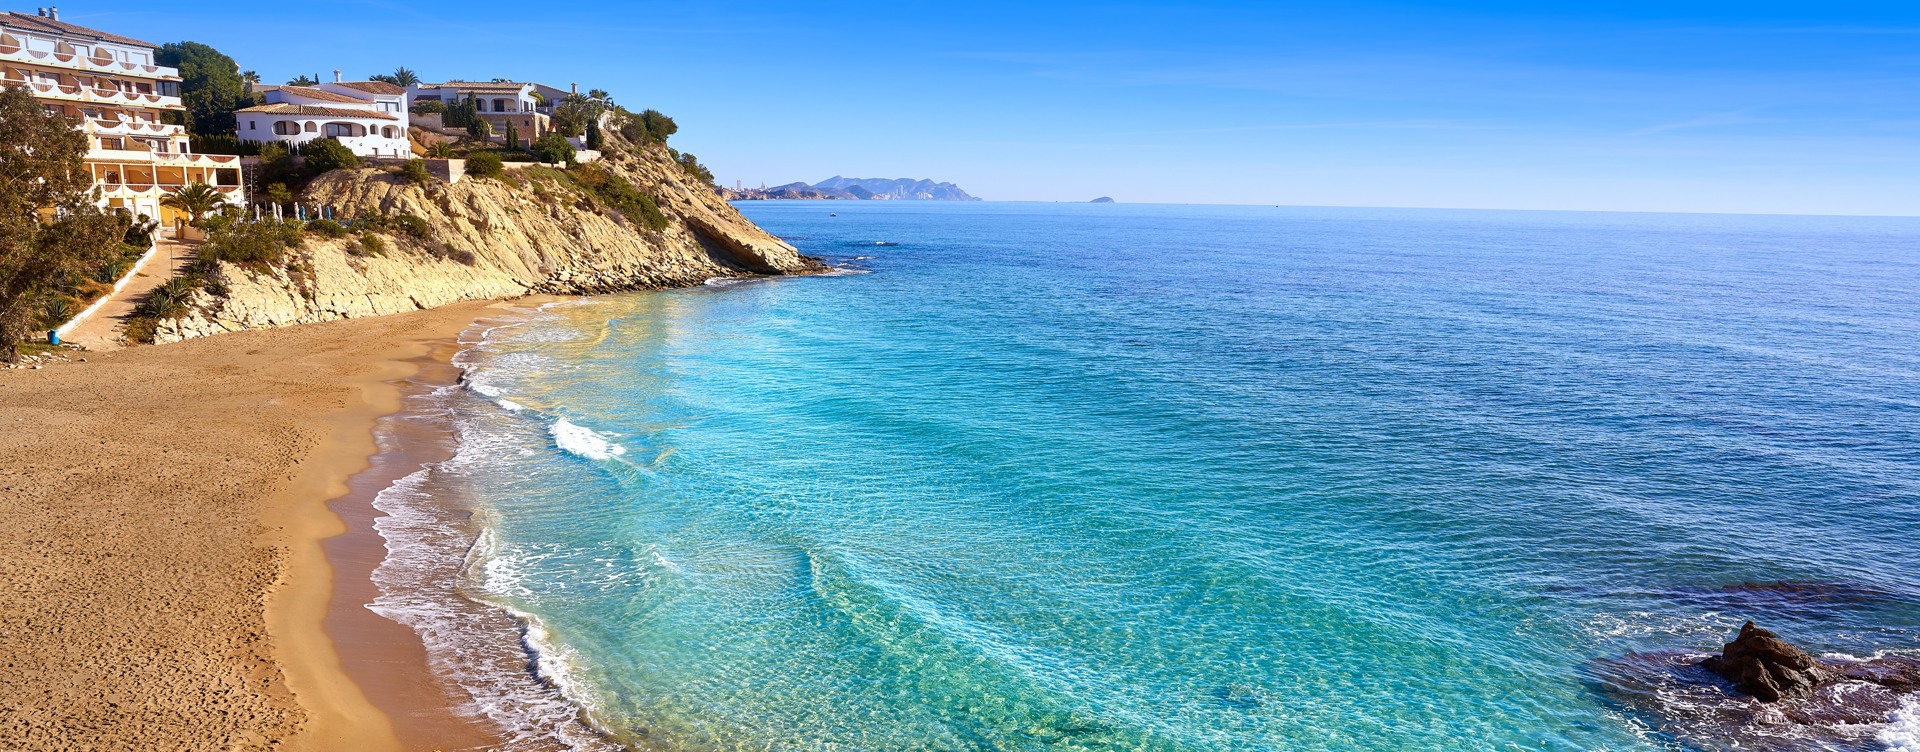 Ontdek de prachtige omgeving aan de Spaanse kust
rondom Dormio Resort Costa Blanca